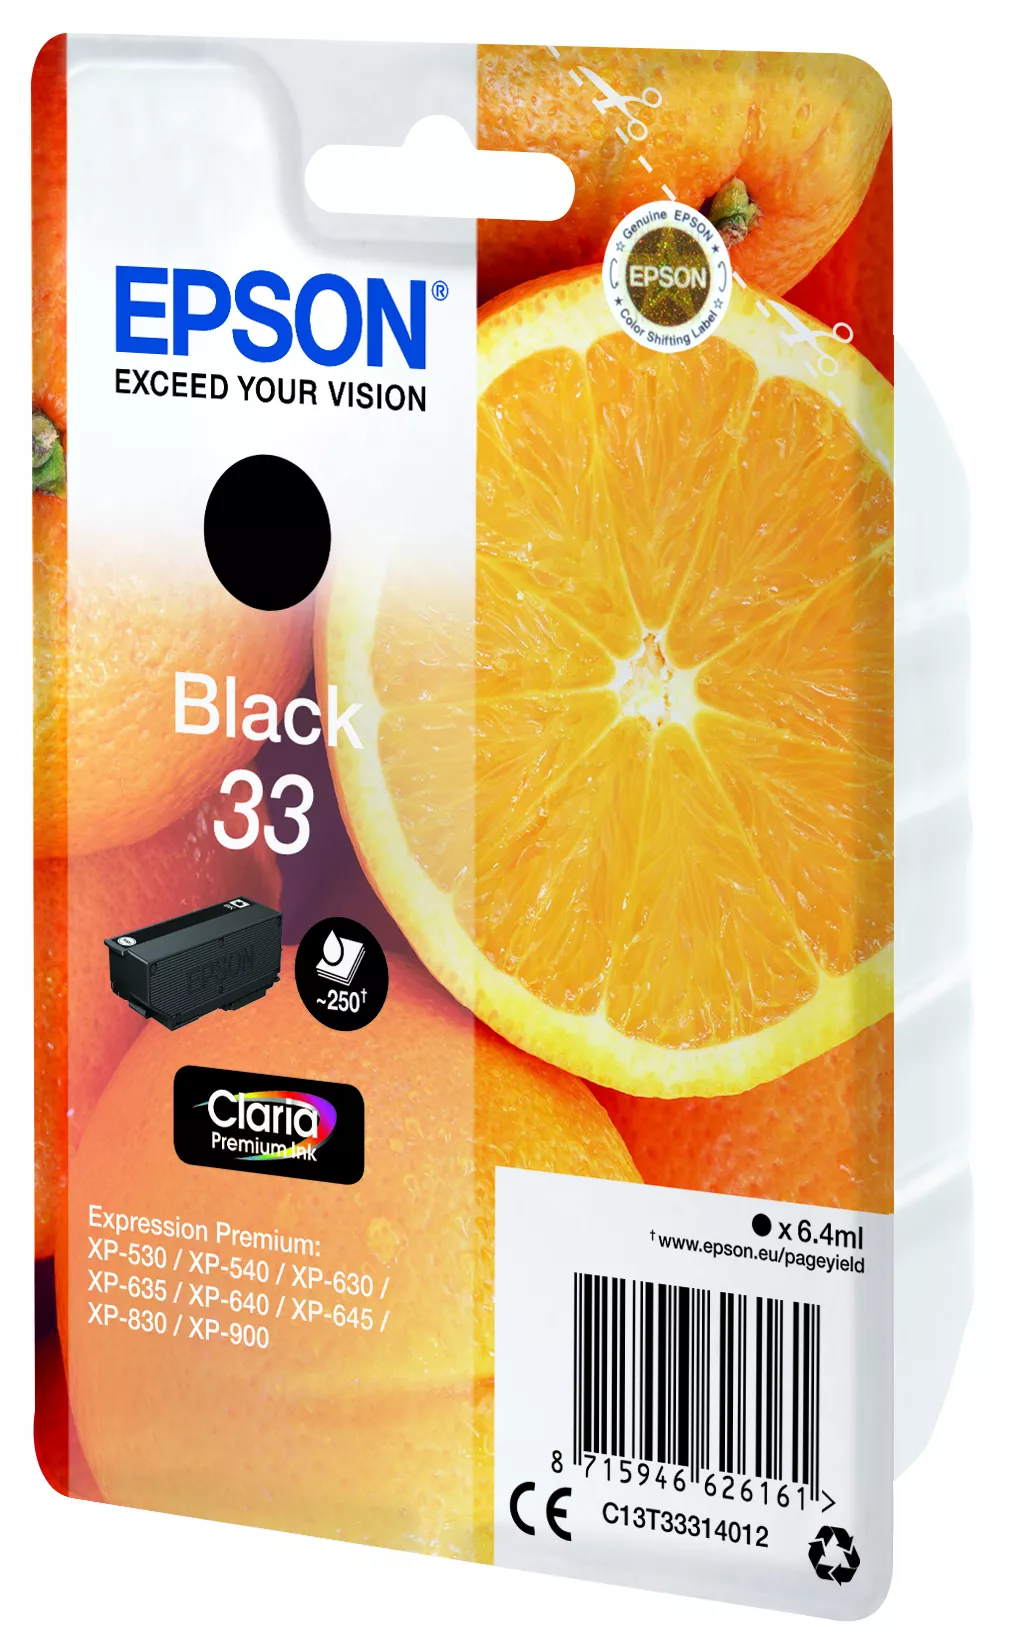 Vente EPSON Cartouche Oranges Encre Claria Premium Noir Epson au meilleur prix - visuel 4